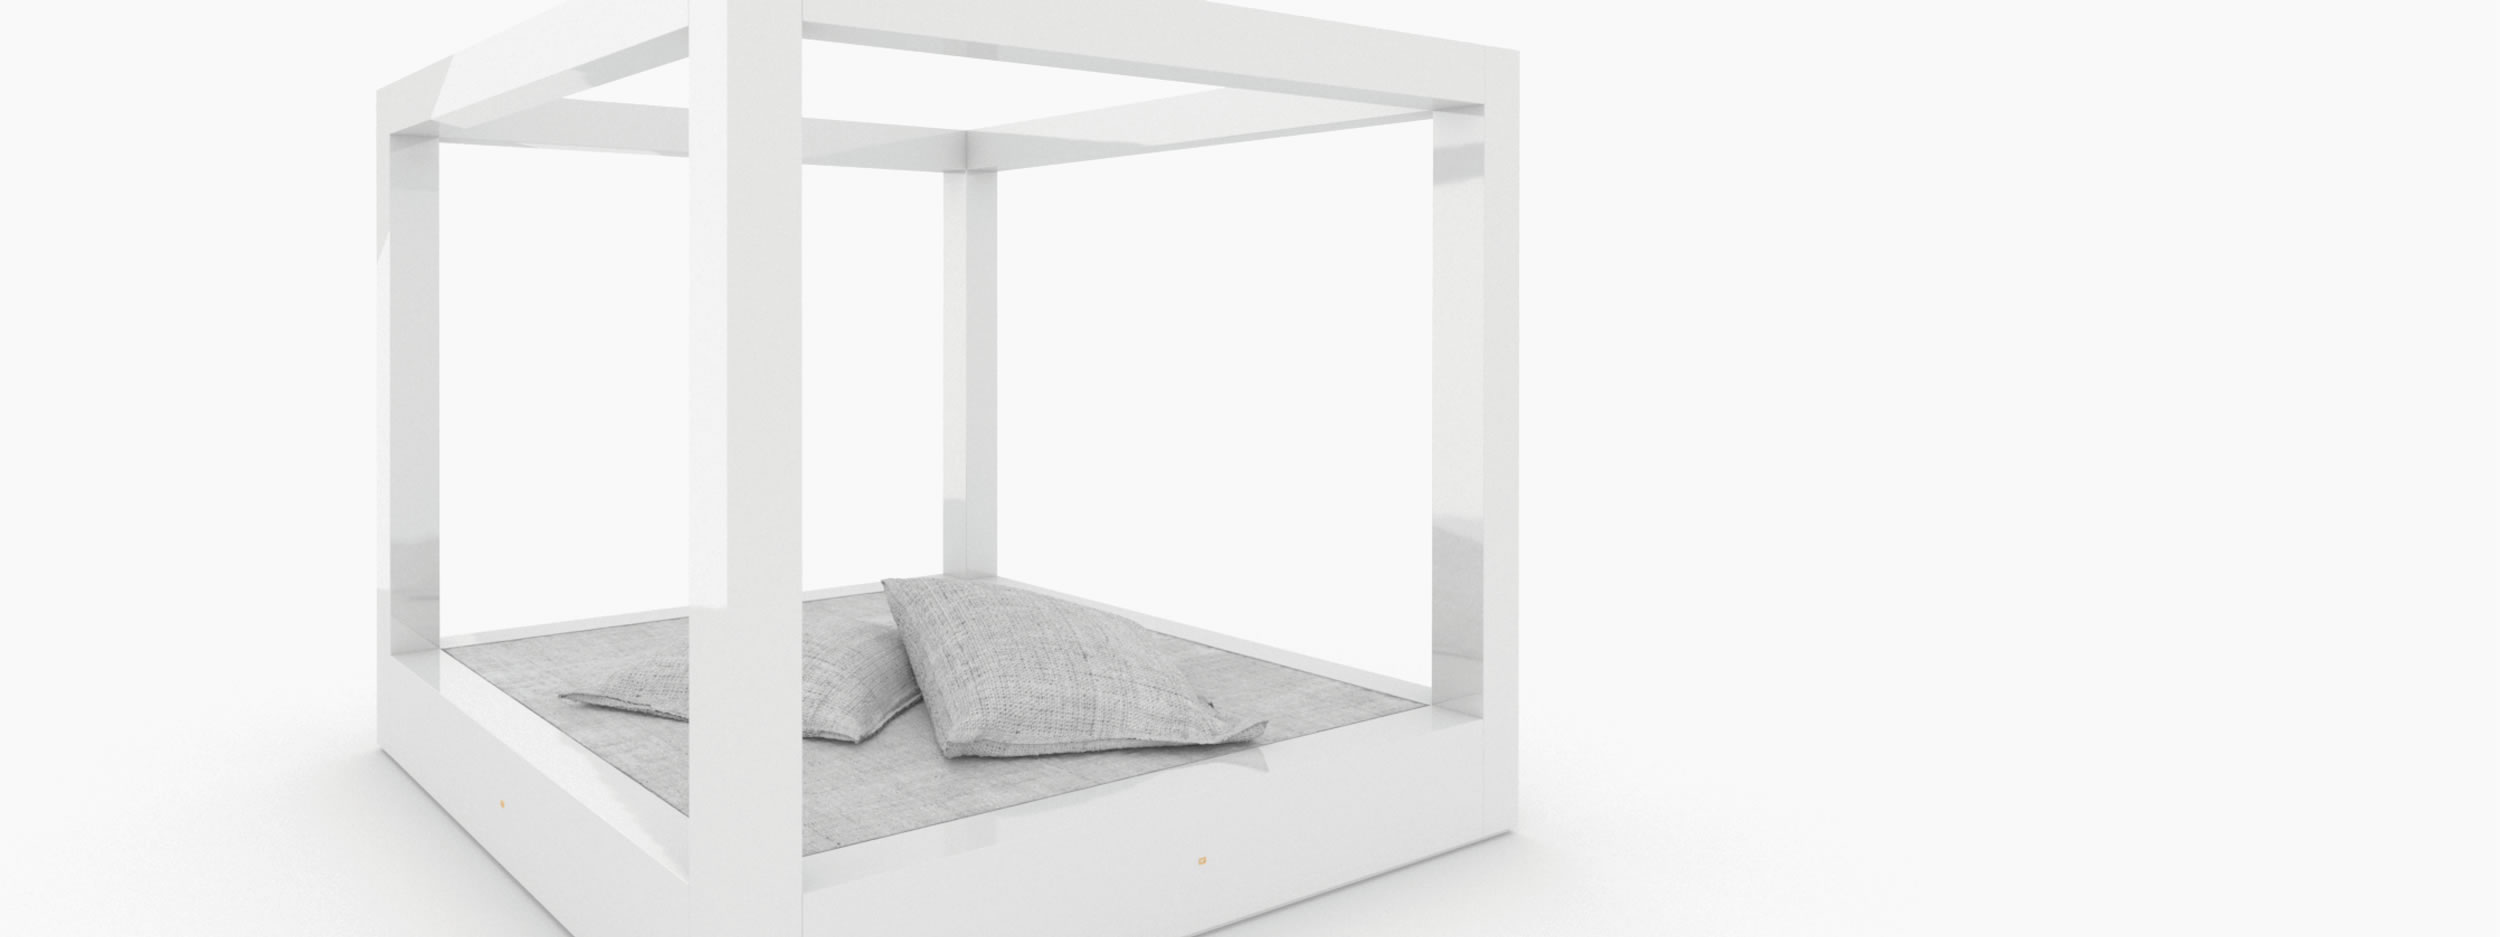 Himmelbett freistehend weiss master bedroom Schlafzimmer design Himmelbett FS 15 FELIX SCHWAKE RECHTECK